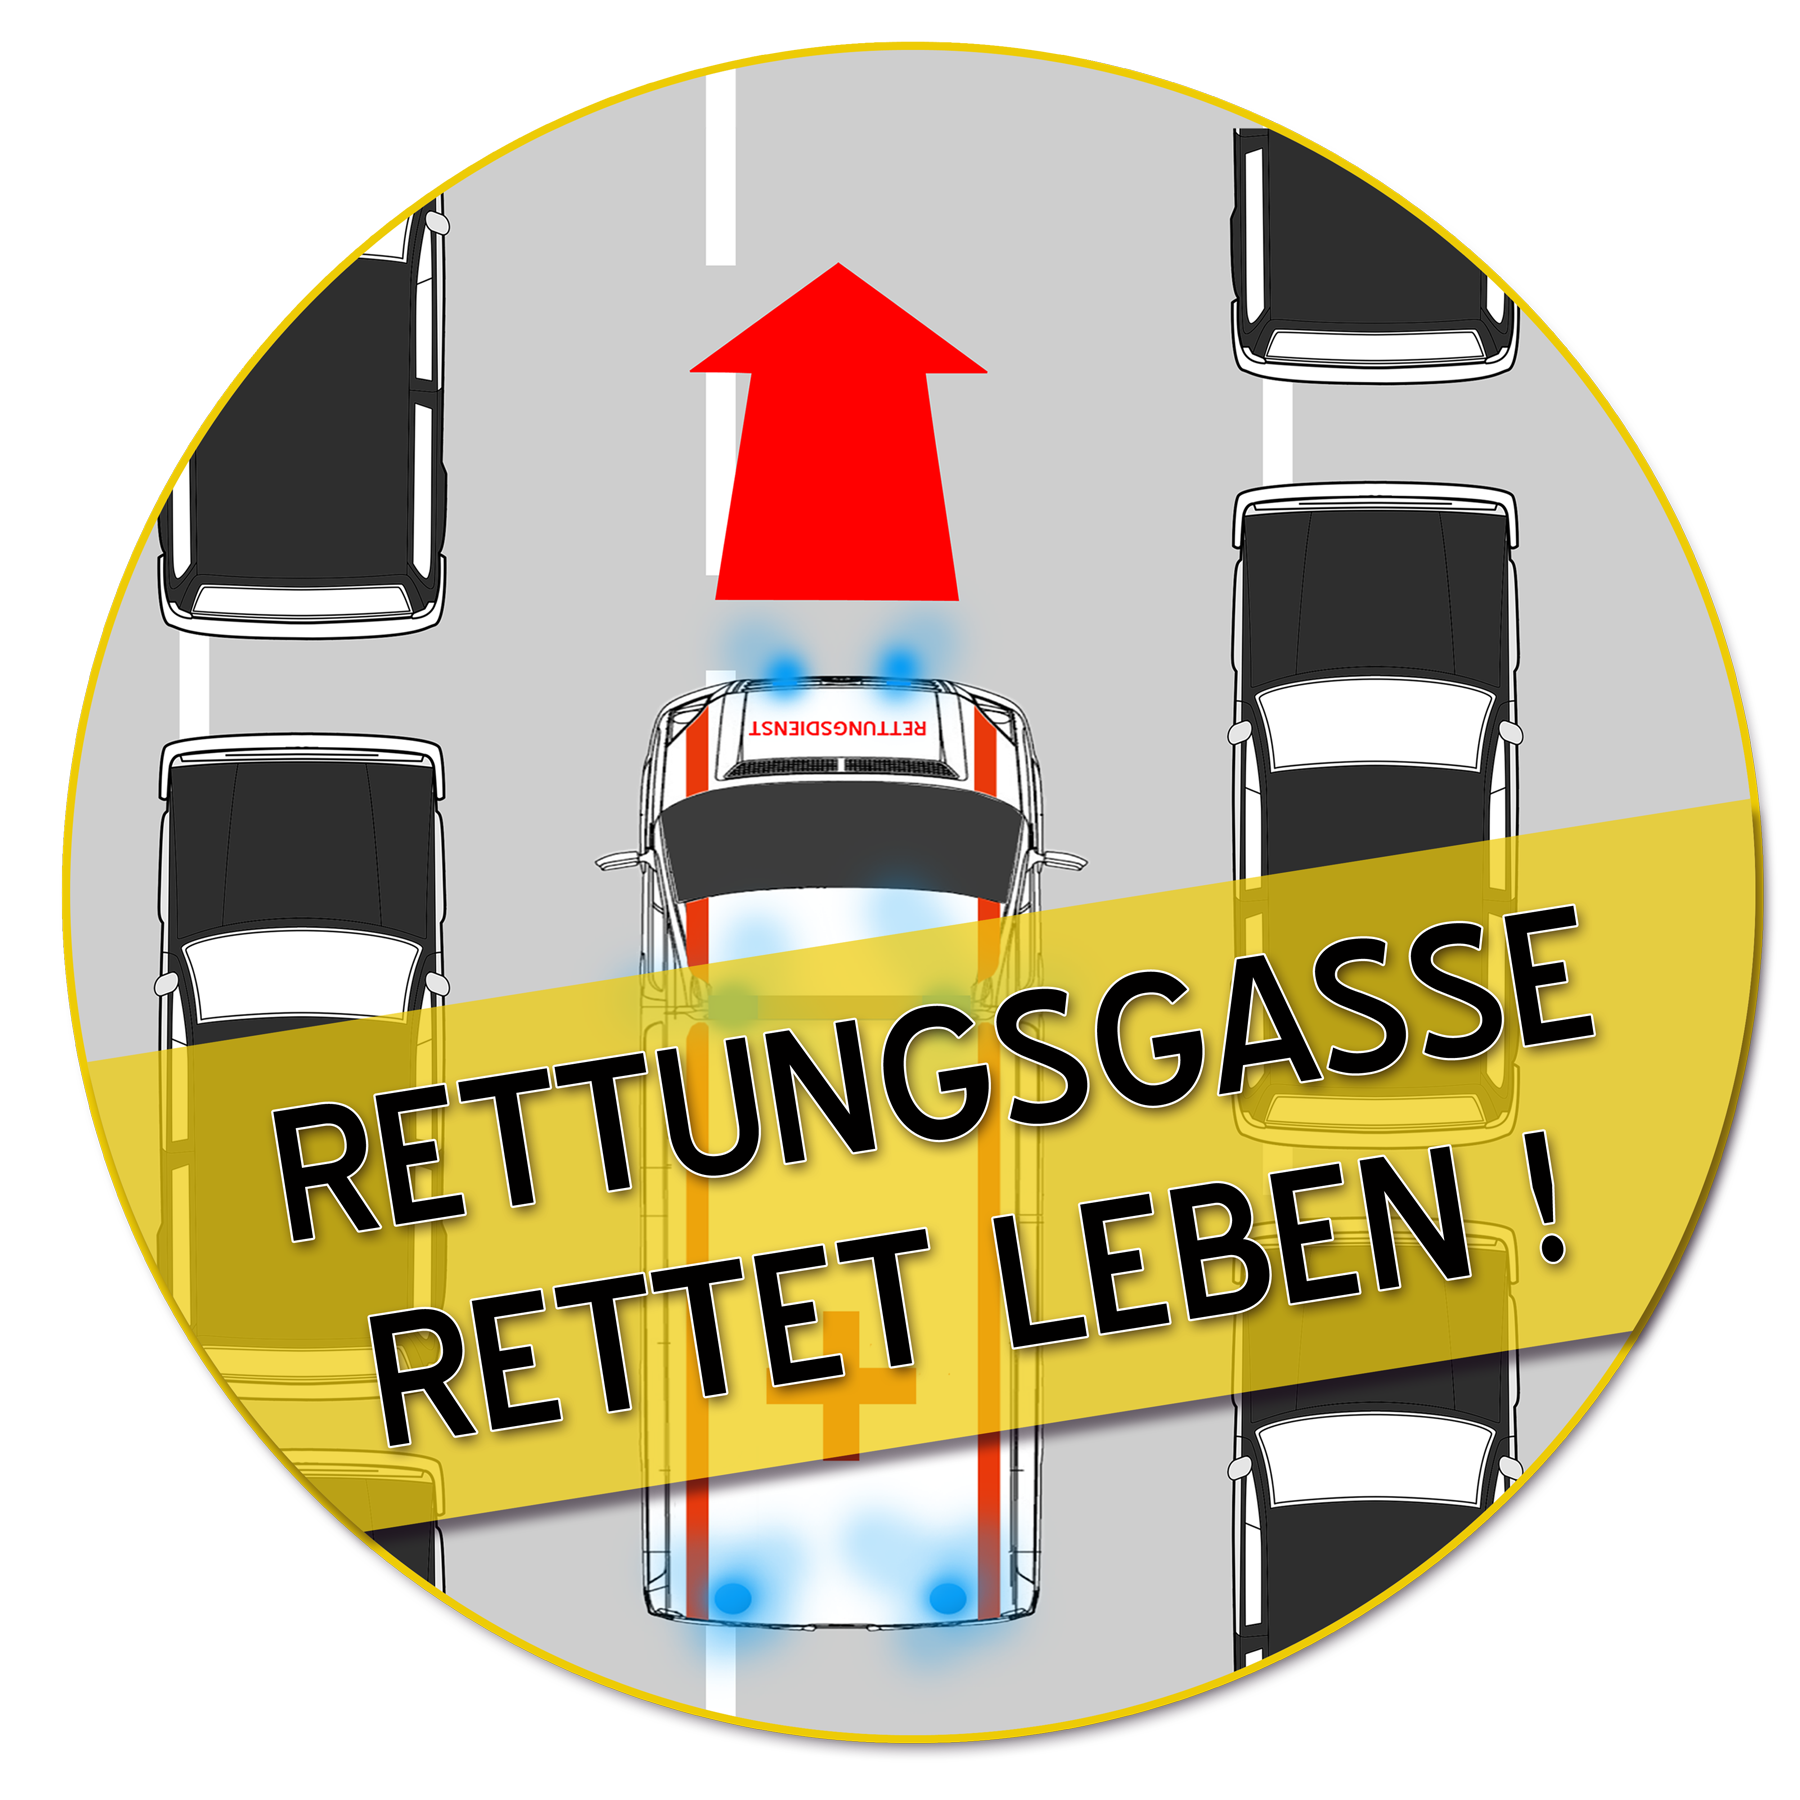 www.rettungsgasse-rettet-leben.de